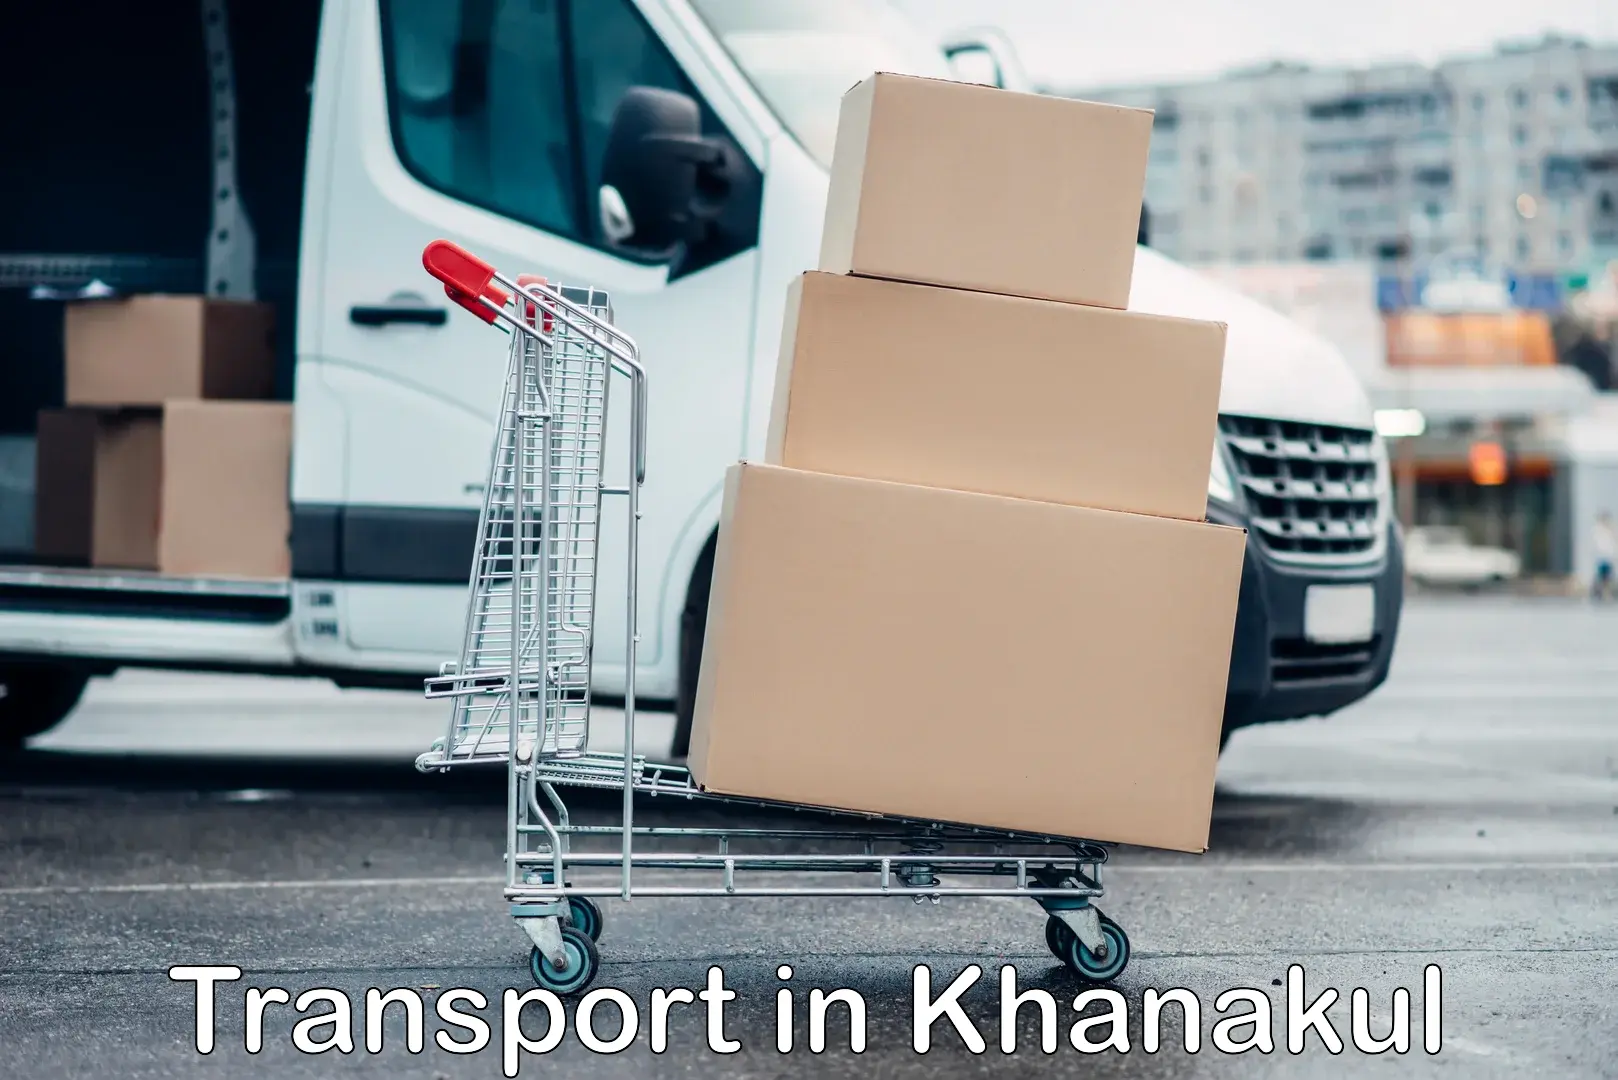 Online transport service in Khanakul